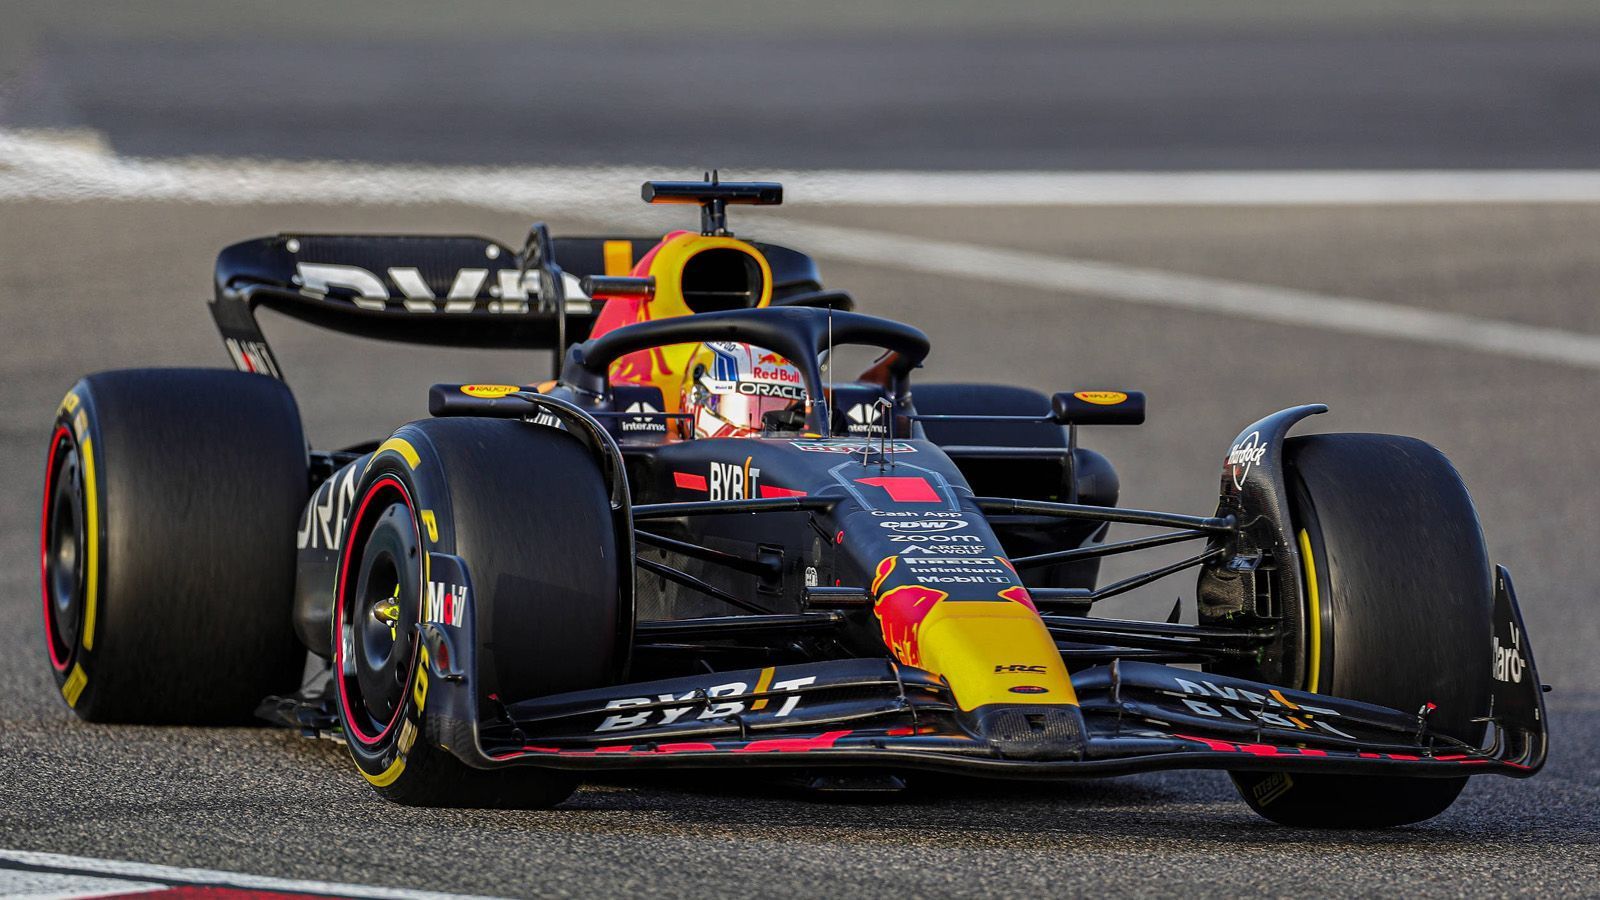 
                <strong>Gewinner: Max Verstappen</strong><br>
                Red Bull Racing macht 2023 offenbar dort weiter, wo der Weltmeister-Rennstall 2022 aufgehört hat. Zumindest wäre es eine Überraschung, wenn Max Verstappen und Sergio Perez beim Auftakt in Bahrain nicht diejenigen sein werden, die es zu schlagen gilt. Verstappen und Co. hinterließen einen starken Eindruck, das Team hat den Vorsprung auf Ferrari mindestens gehalten. "Es lief sehr gut. Das Auto funktioniert prima", sagte Verstappen, der sich natürlich nicht komplett in die Karten schauen lassen will. "Wo wir gemessen an der Konkurrenz stehen, das kann ich kaum abschätzen. Ich bleibe dabei, dass wir uns lieber auf uns selber konzentrieren, als links und rechts zu schauen, was die Gegner machen. Dieses Vorgehen hat sich in der Vergangenheit bewährt."
              